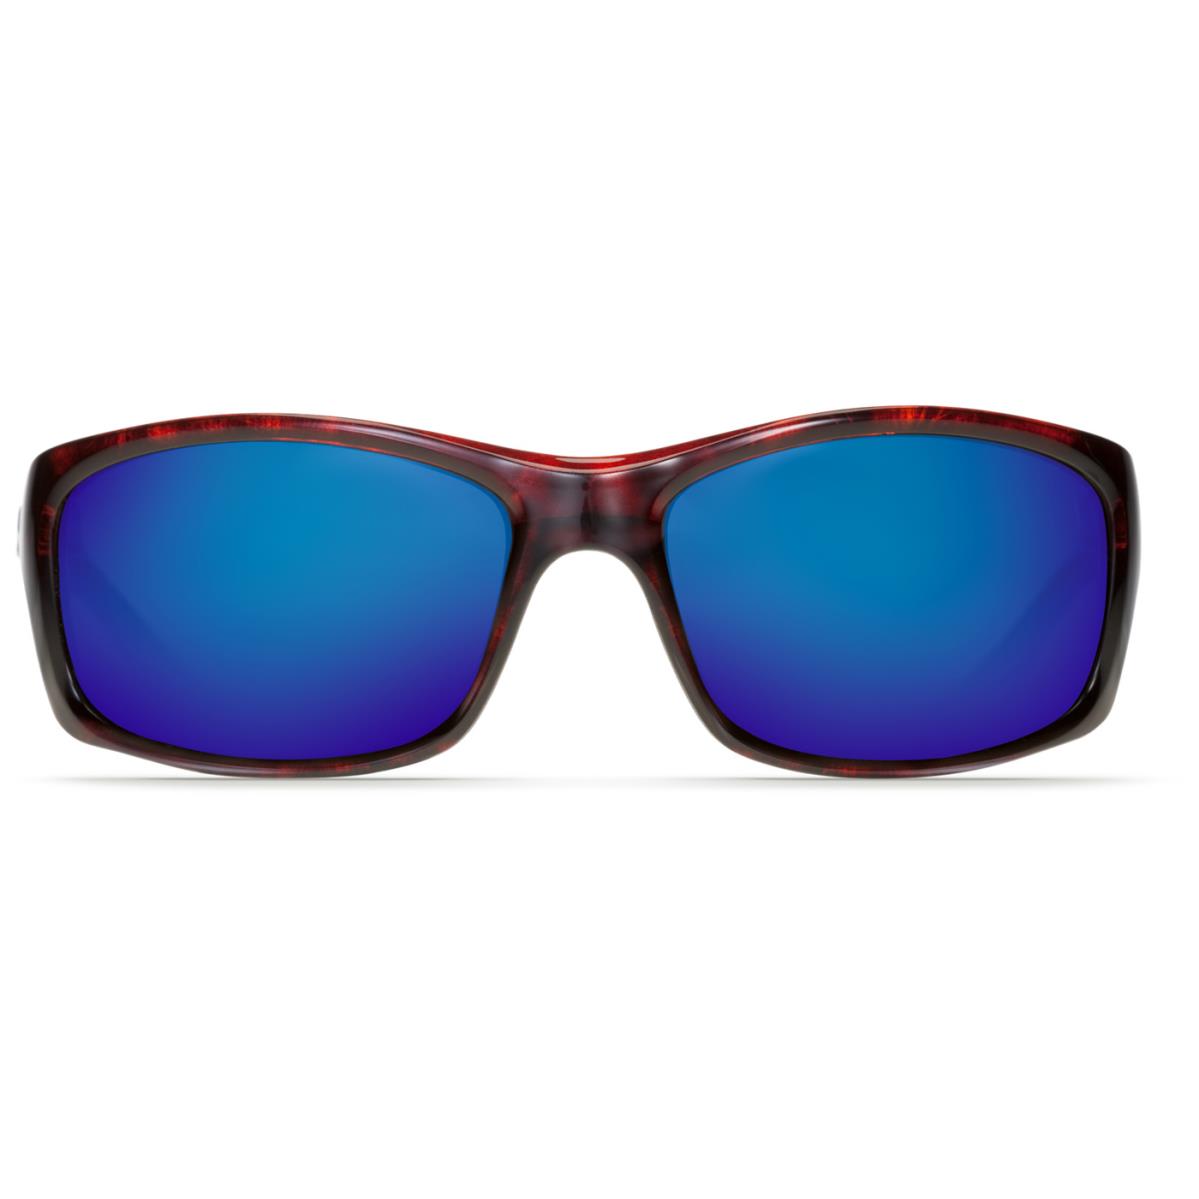 Costa Jose Sunglasses - Polarized - Tortoise Frame w/ Blue Mirror 580G Lens - Frame: Brown, Lens: Blue